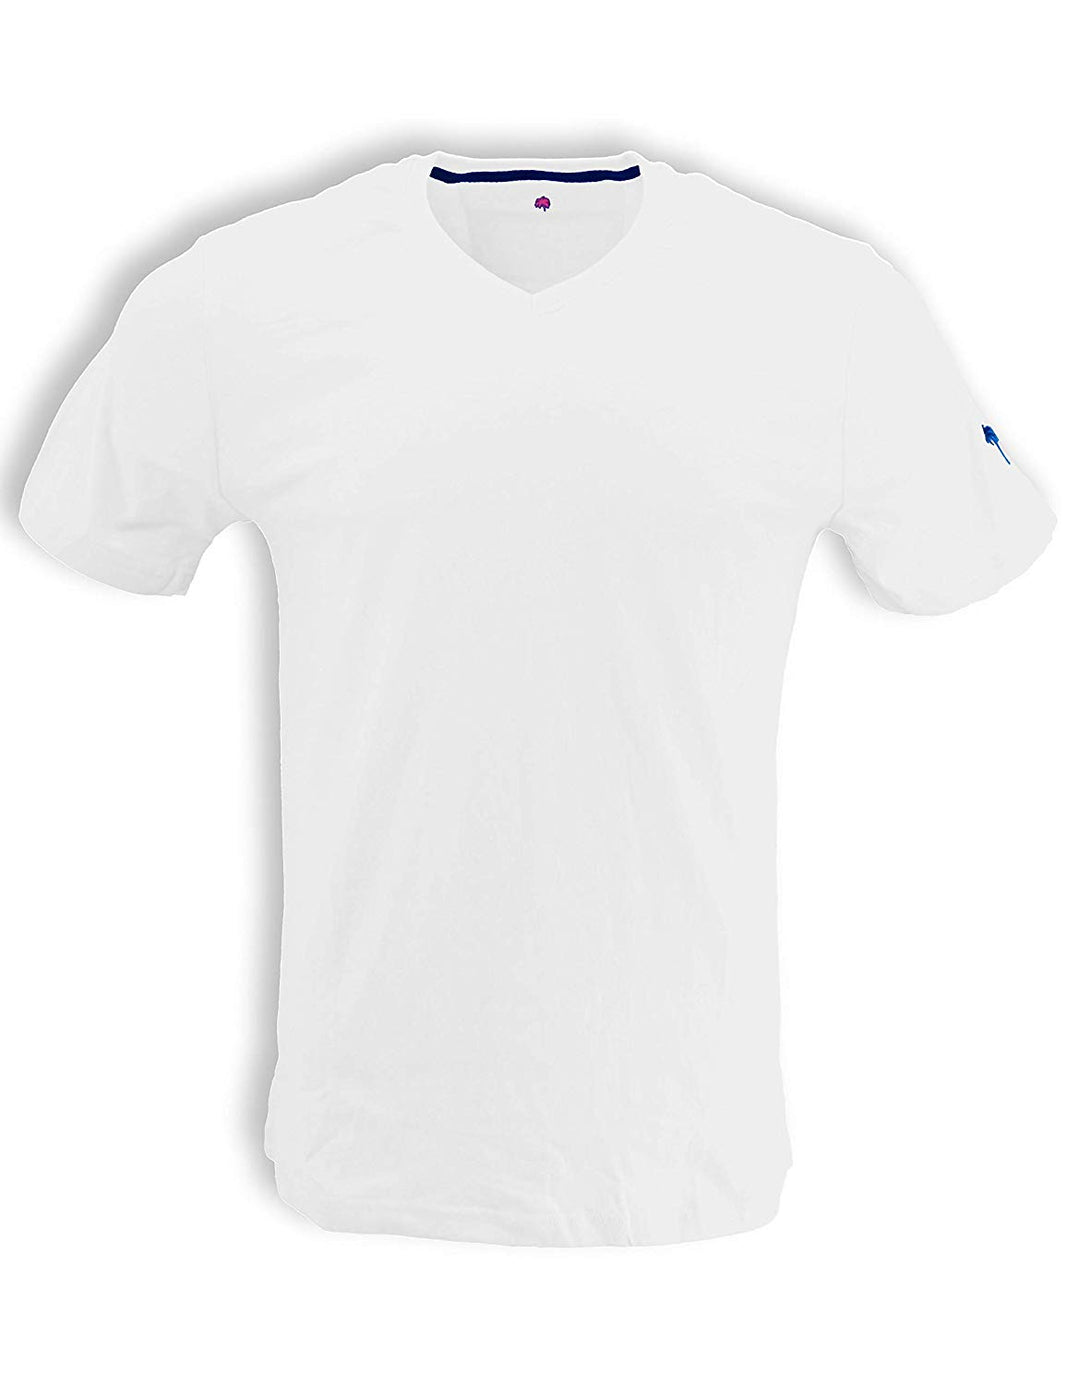 Bermuda Styles V-Neck T-Shirt